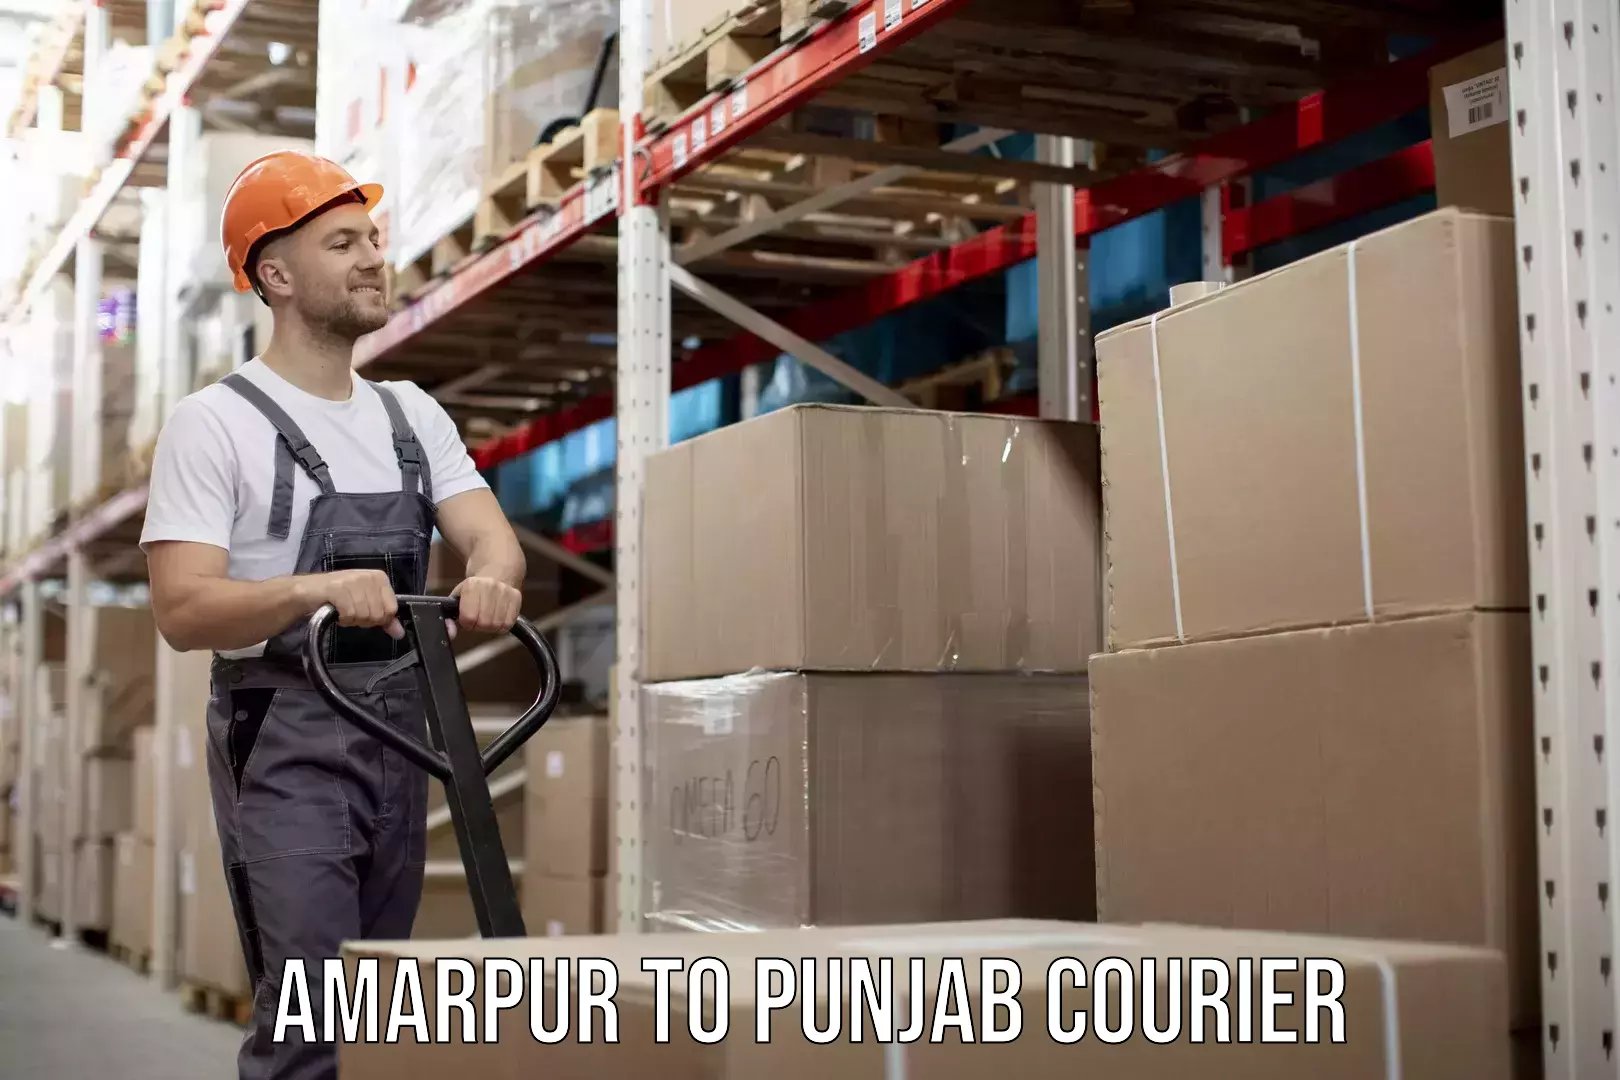 Global parcel delivery Amarpur to Punjab